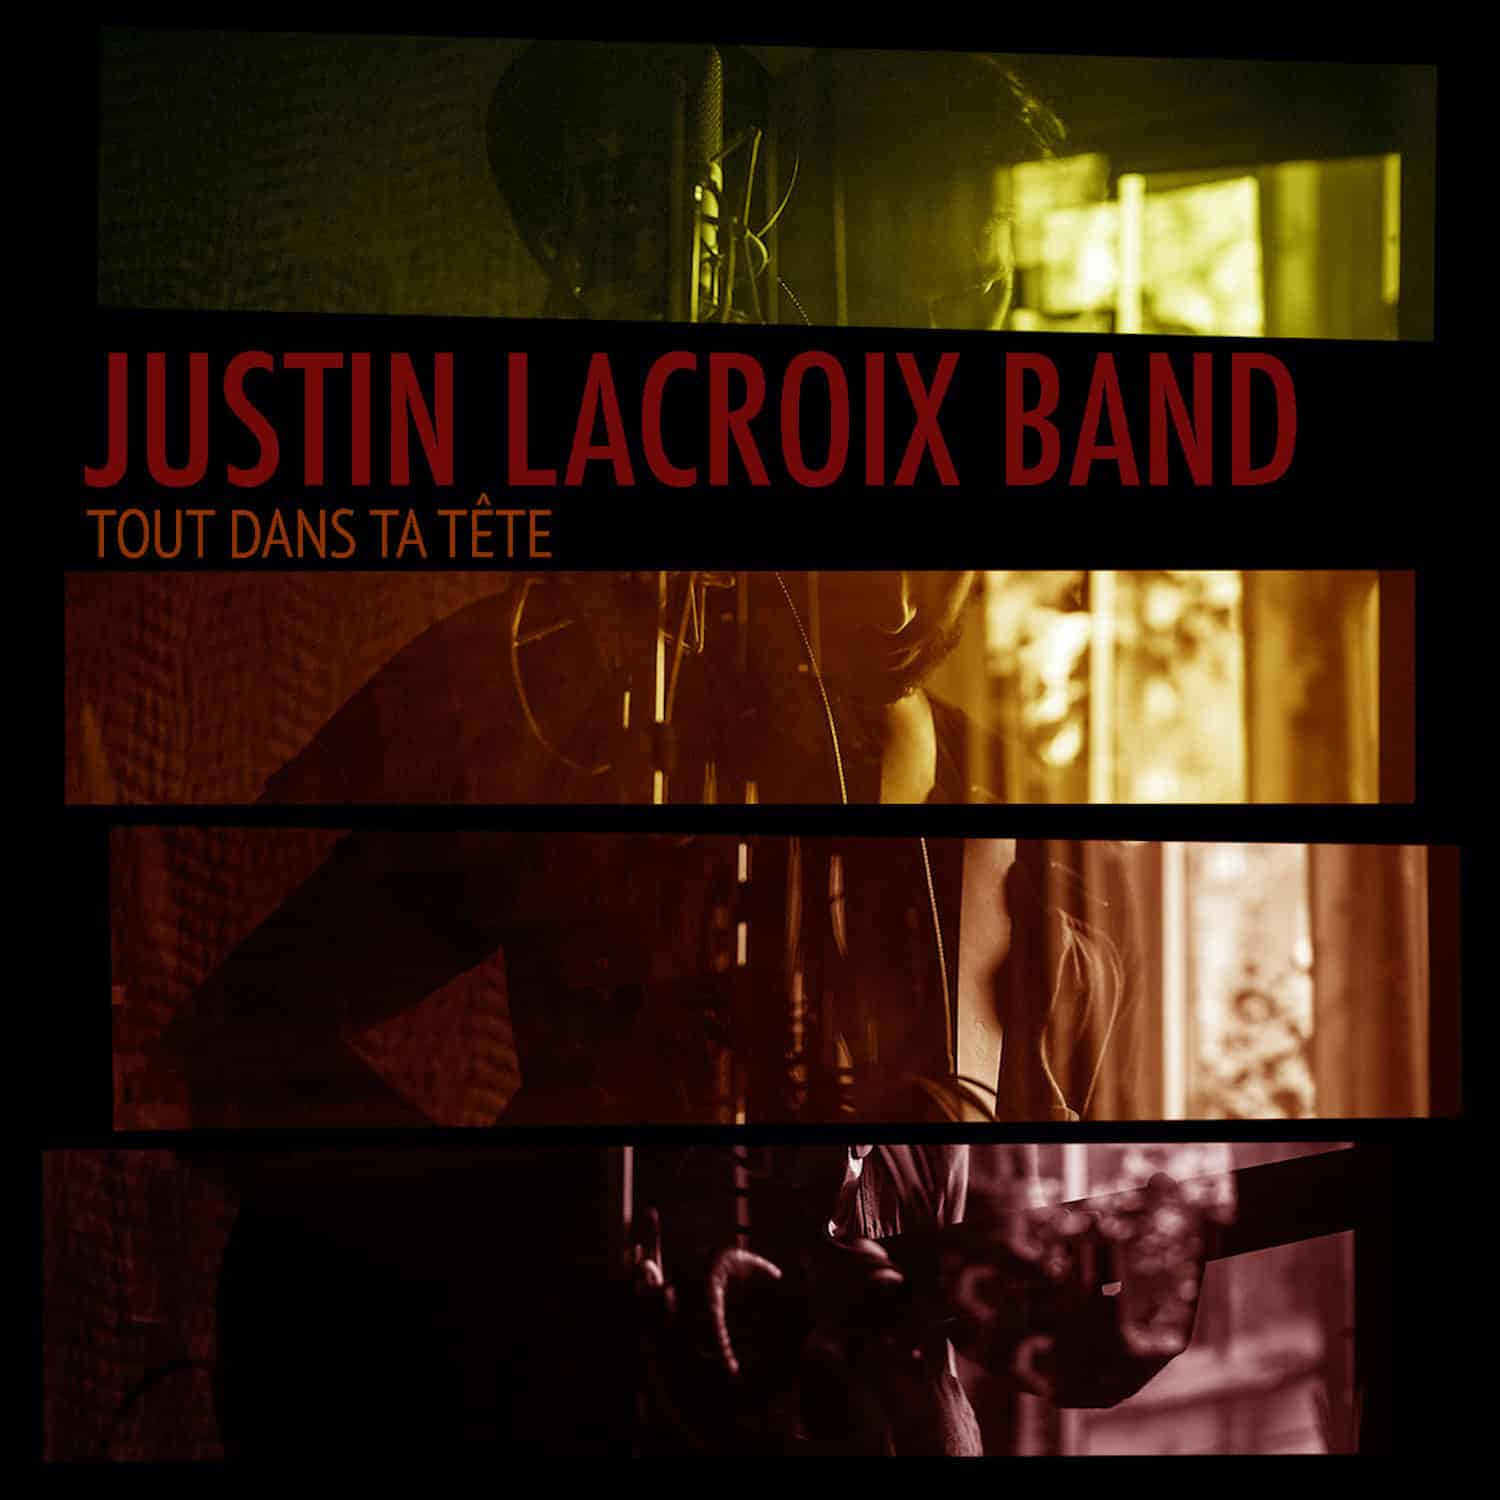 Justin Lacroix Band – Tout dans ta tête (EP)